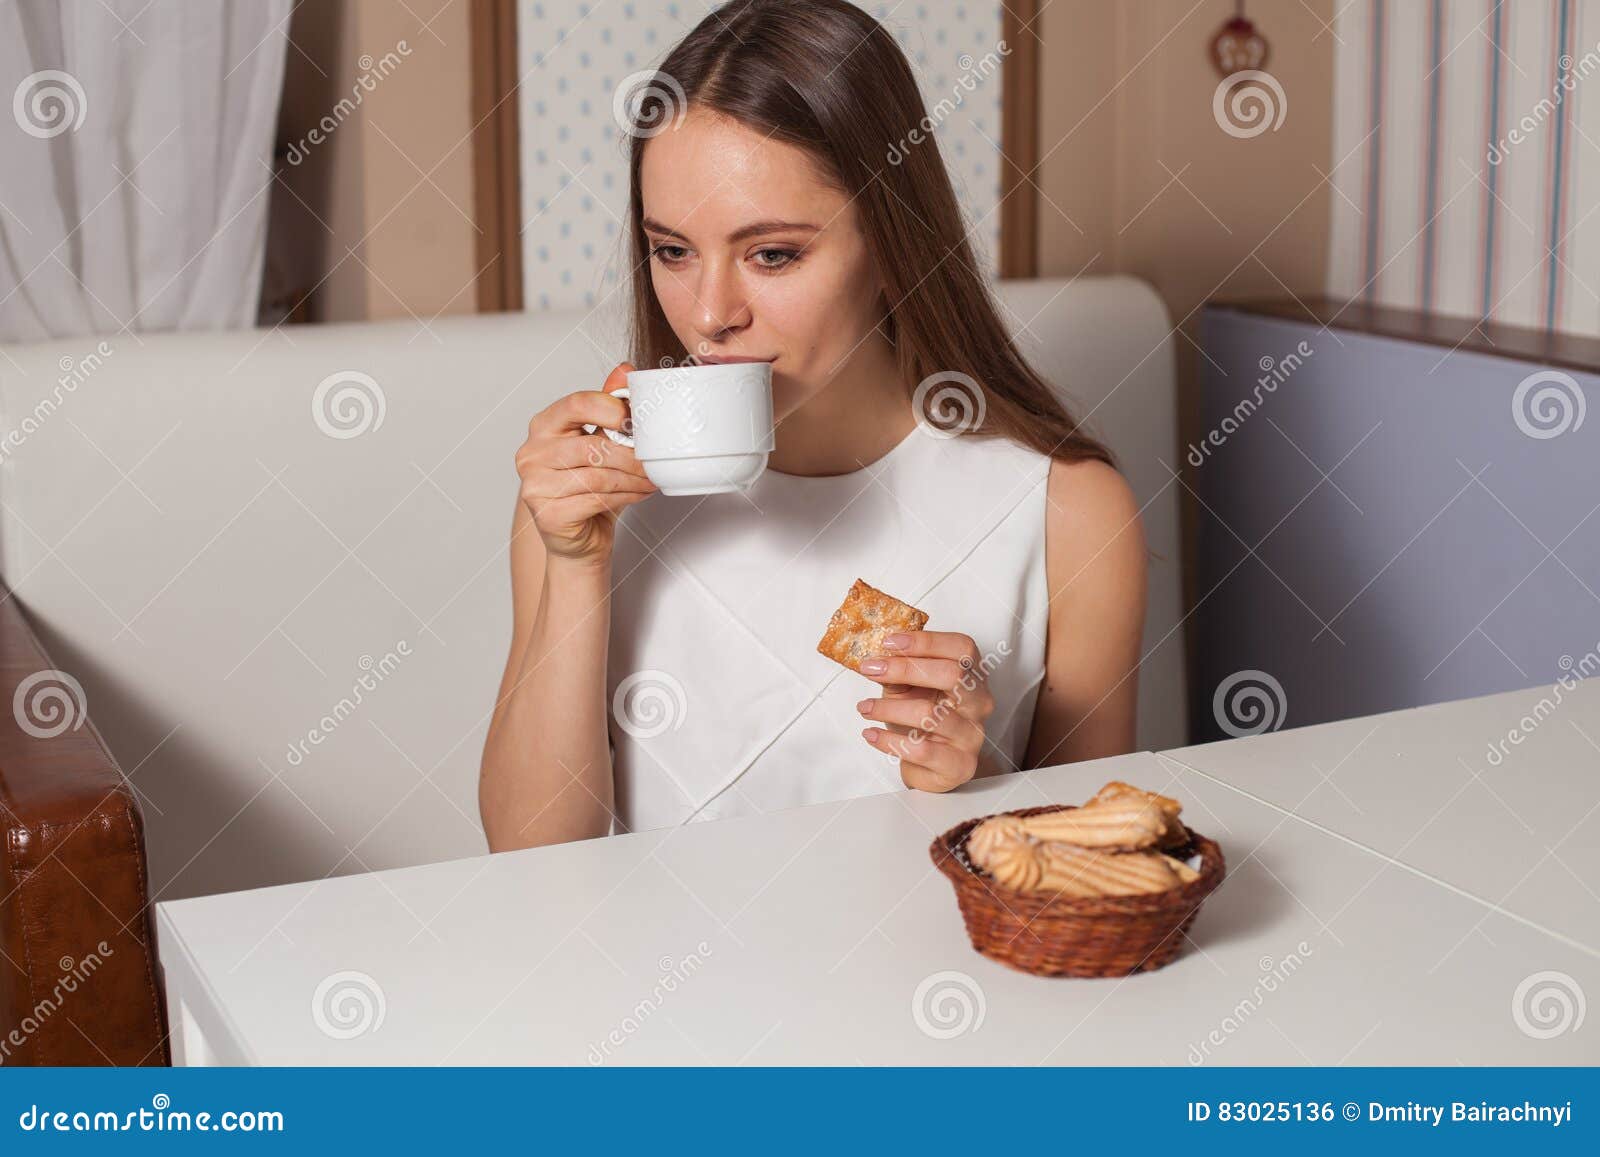 Чай пью с печеньем. Пьет чай с печеньем. Девушка пьет чай с печеньем. Ест печенье с чаем. Компания пьет чай с печеньем.